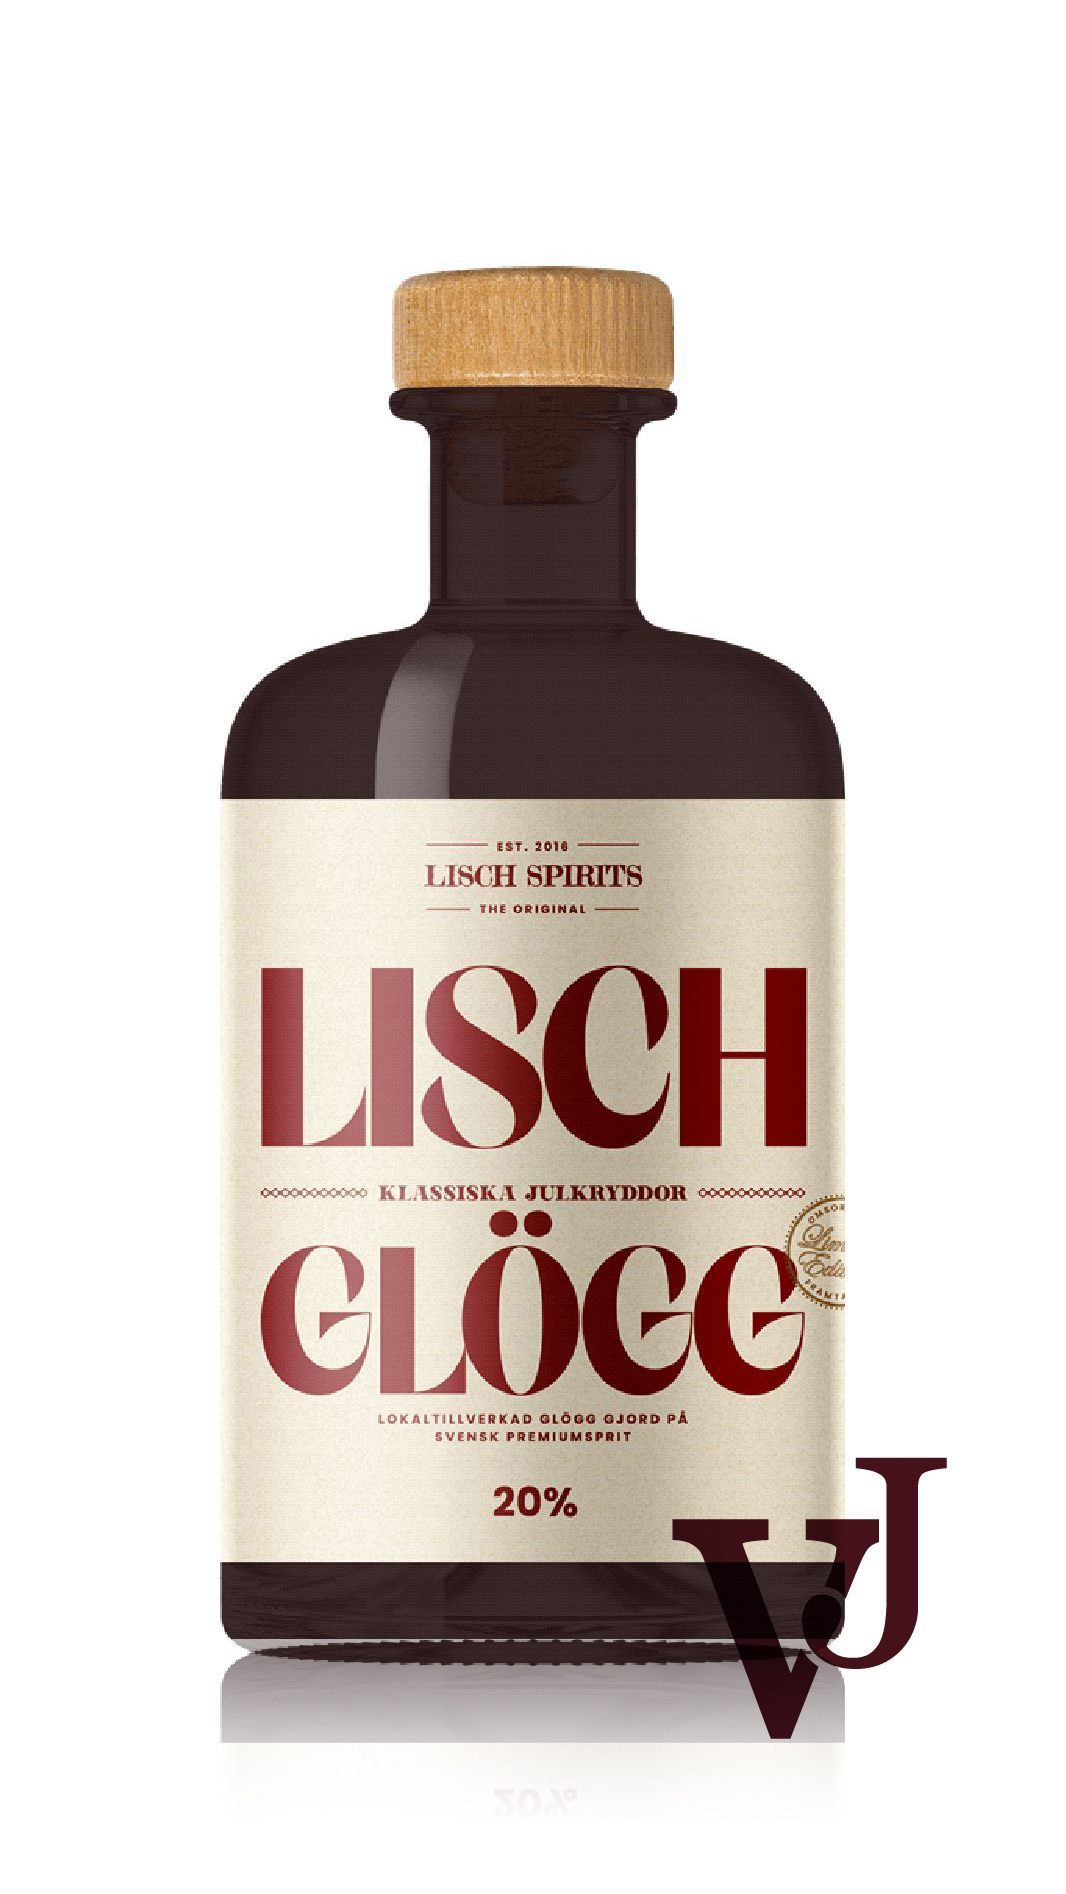 Övrigt Vin - LISCH Glögg Limited Edition artikel nummer 7362302 från producenten Triplus Vinhandel AB från Sverige.